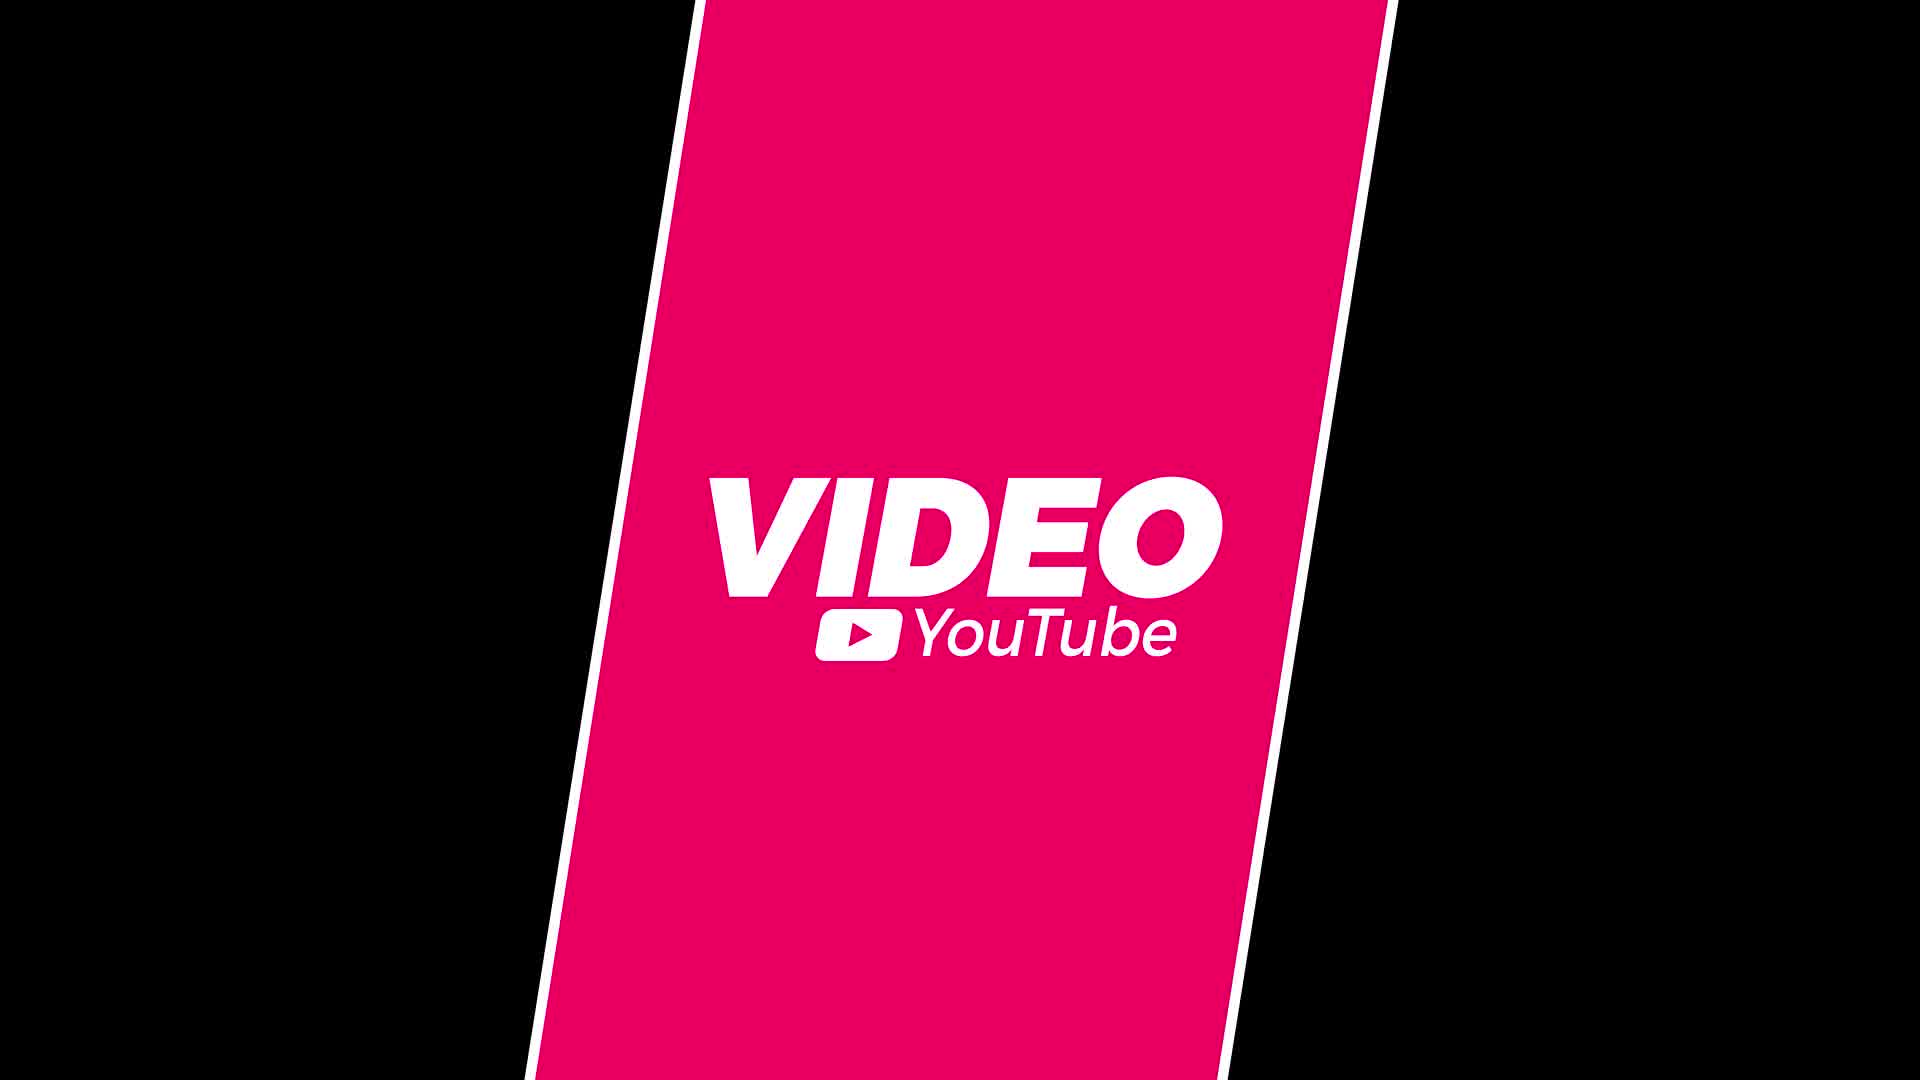 YouTube 的垂直标题视频模板素材完整版免费下载